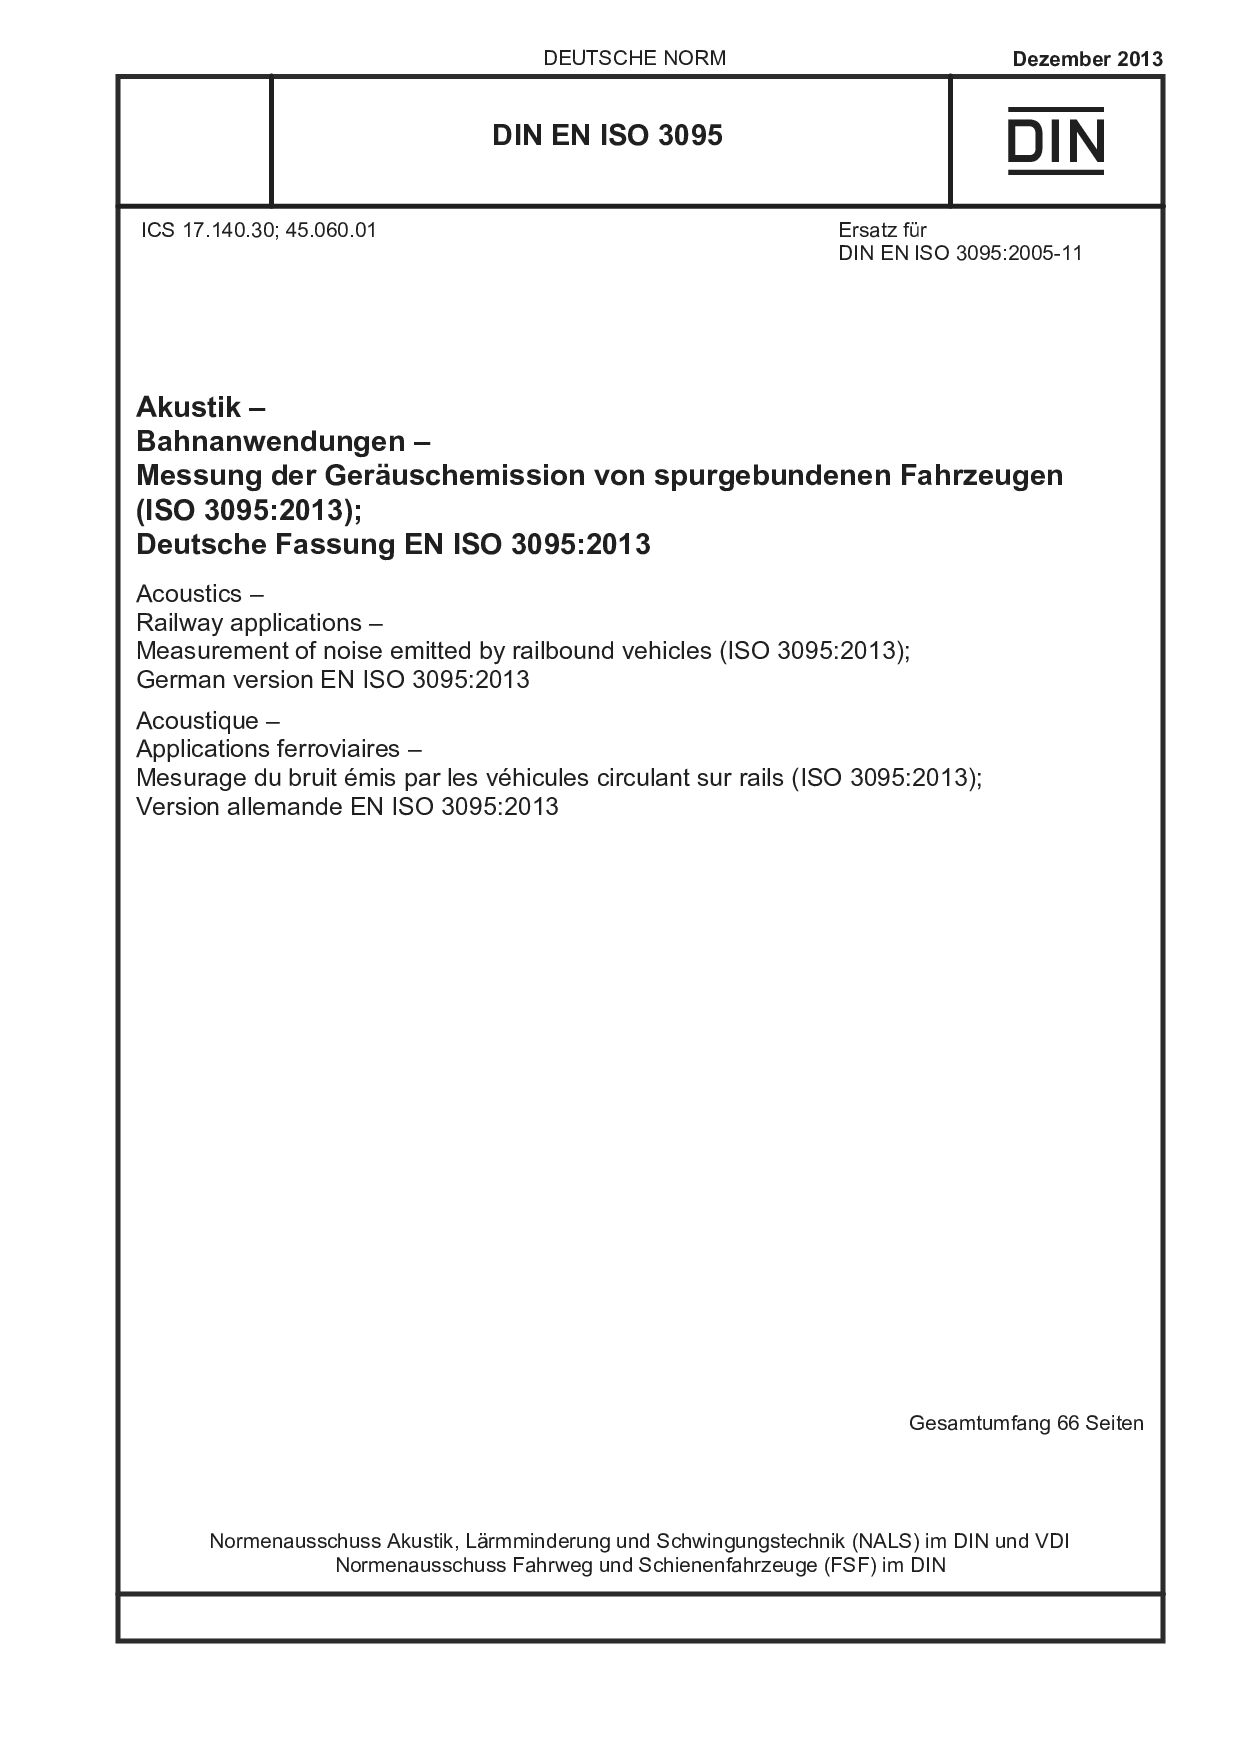 DIN EN ISO 3095:2013封面图